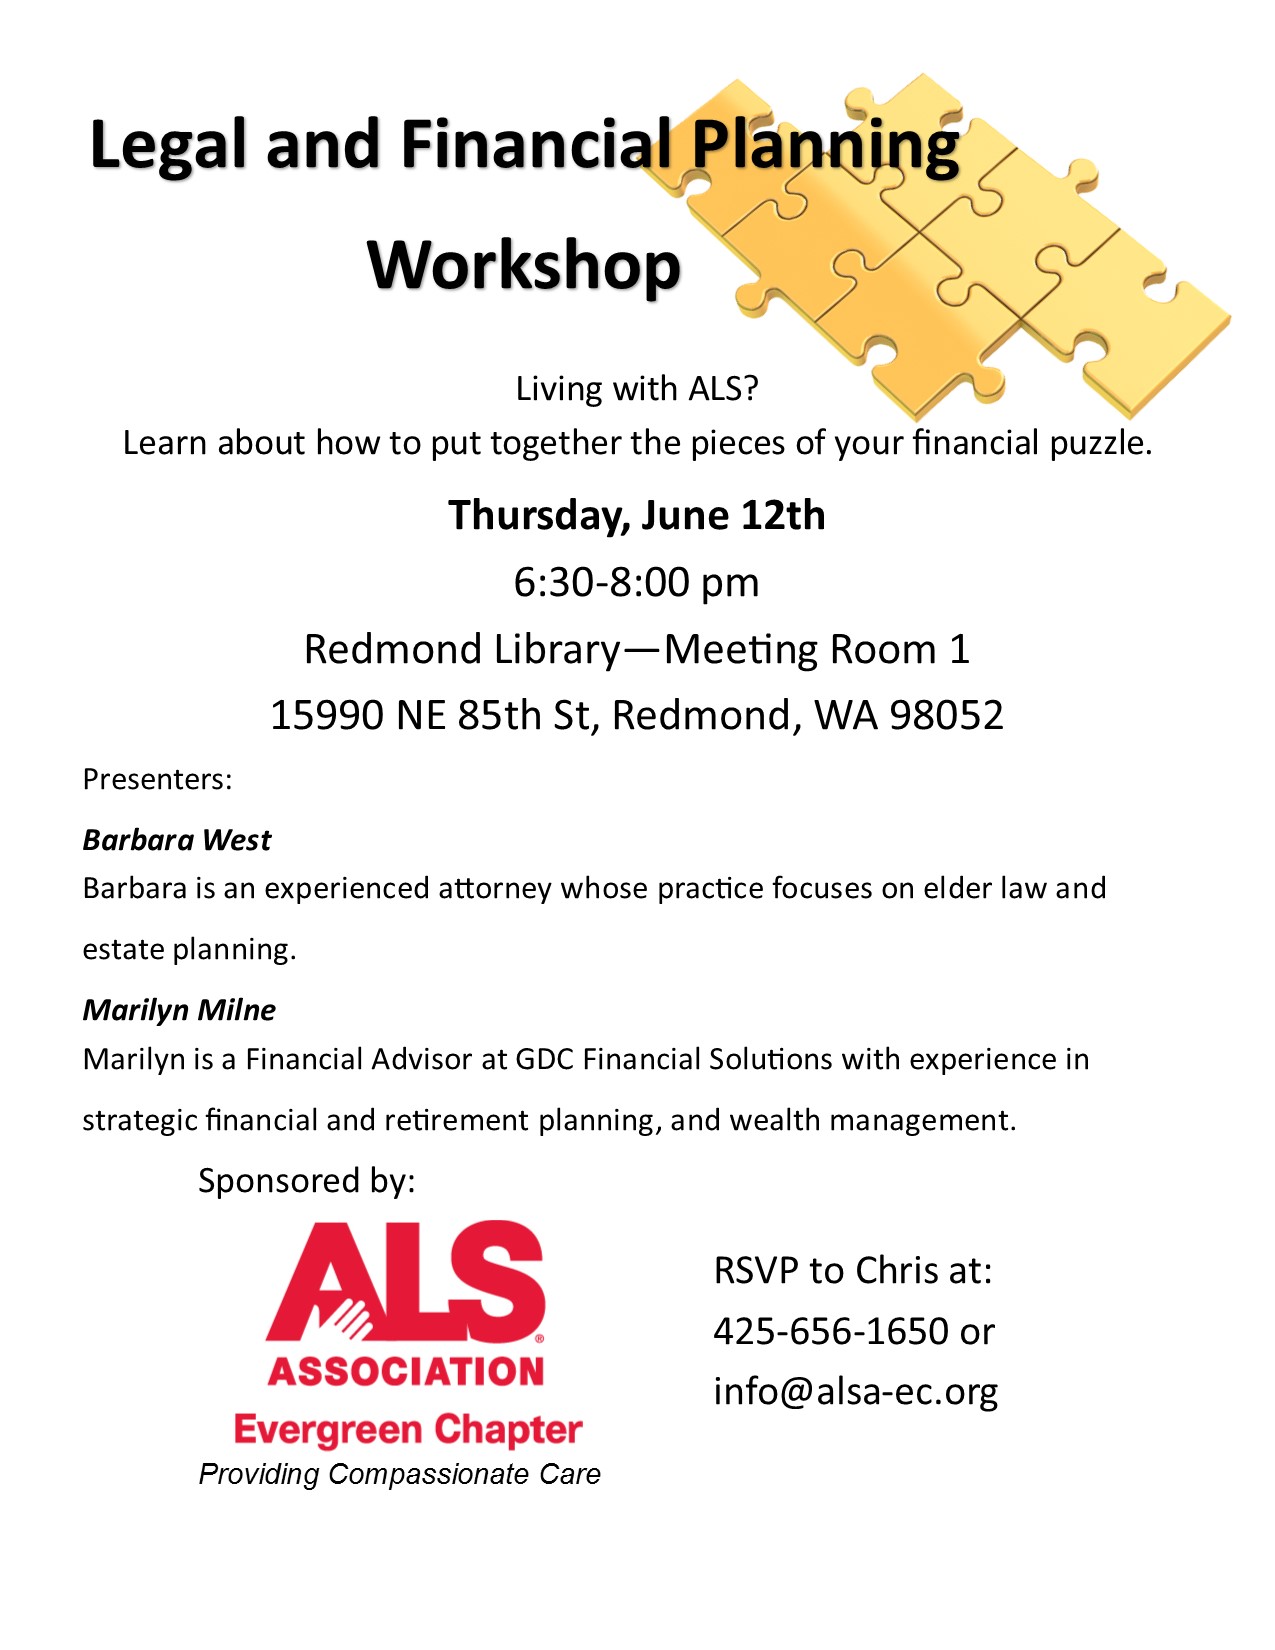 Financial & Legal Planning Workshop Flyer.jpg